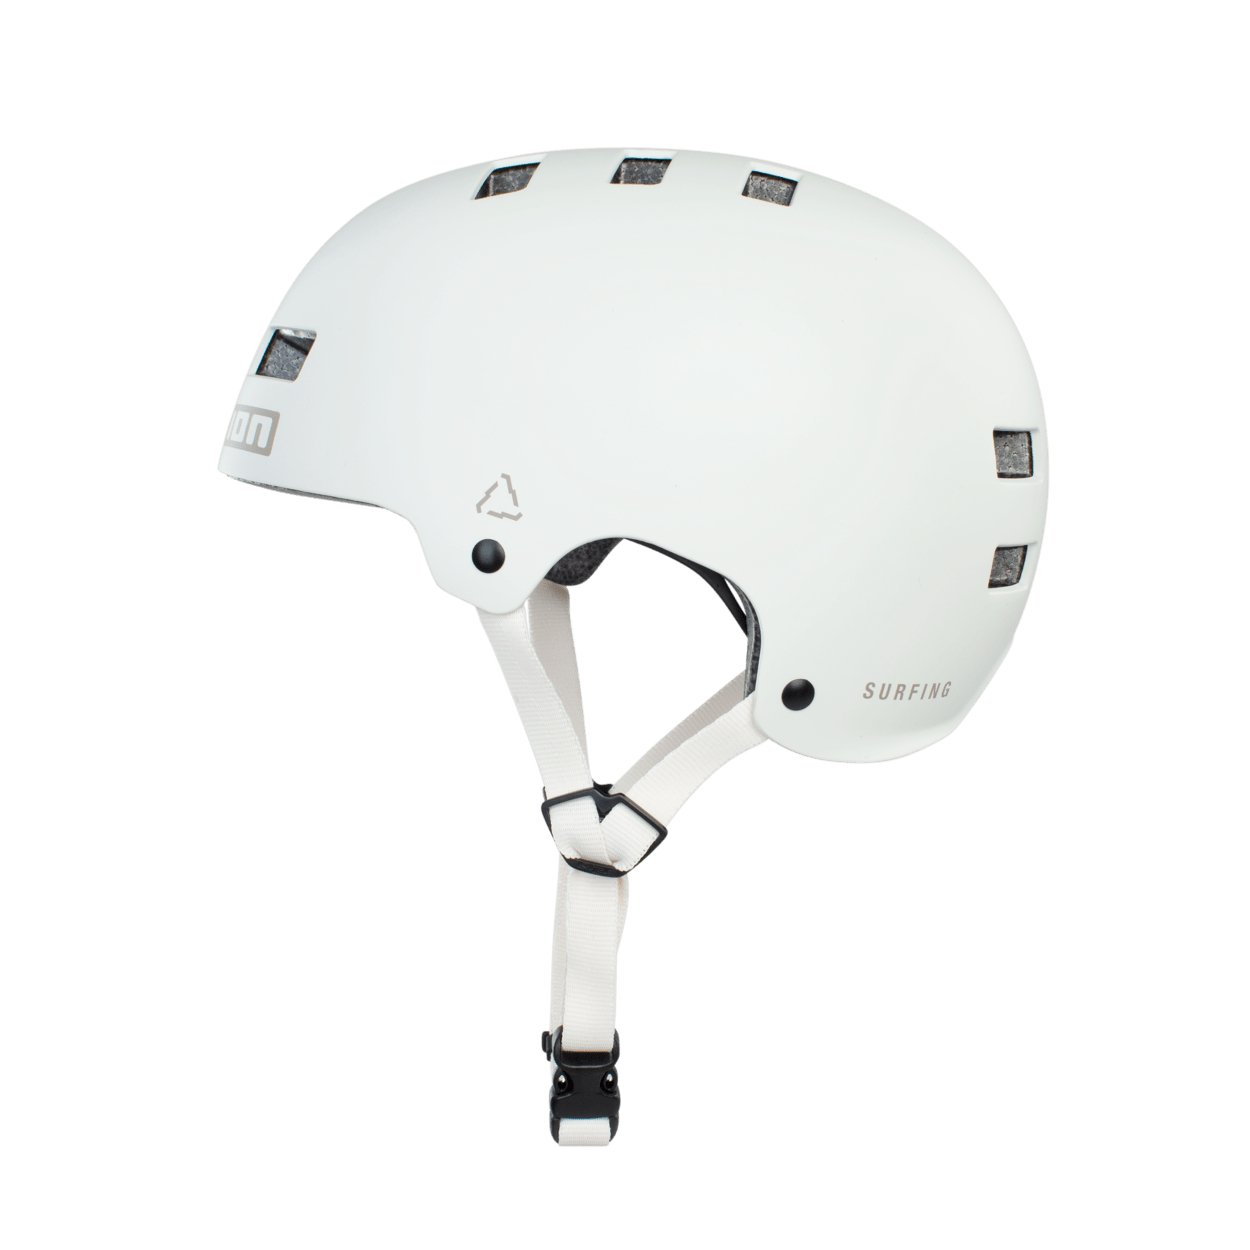 ION MTB Helmet Seek EU/CE 2024 - Worthing Watersports - 9010583030357 - Helmets - ION Bike